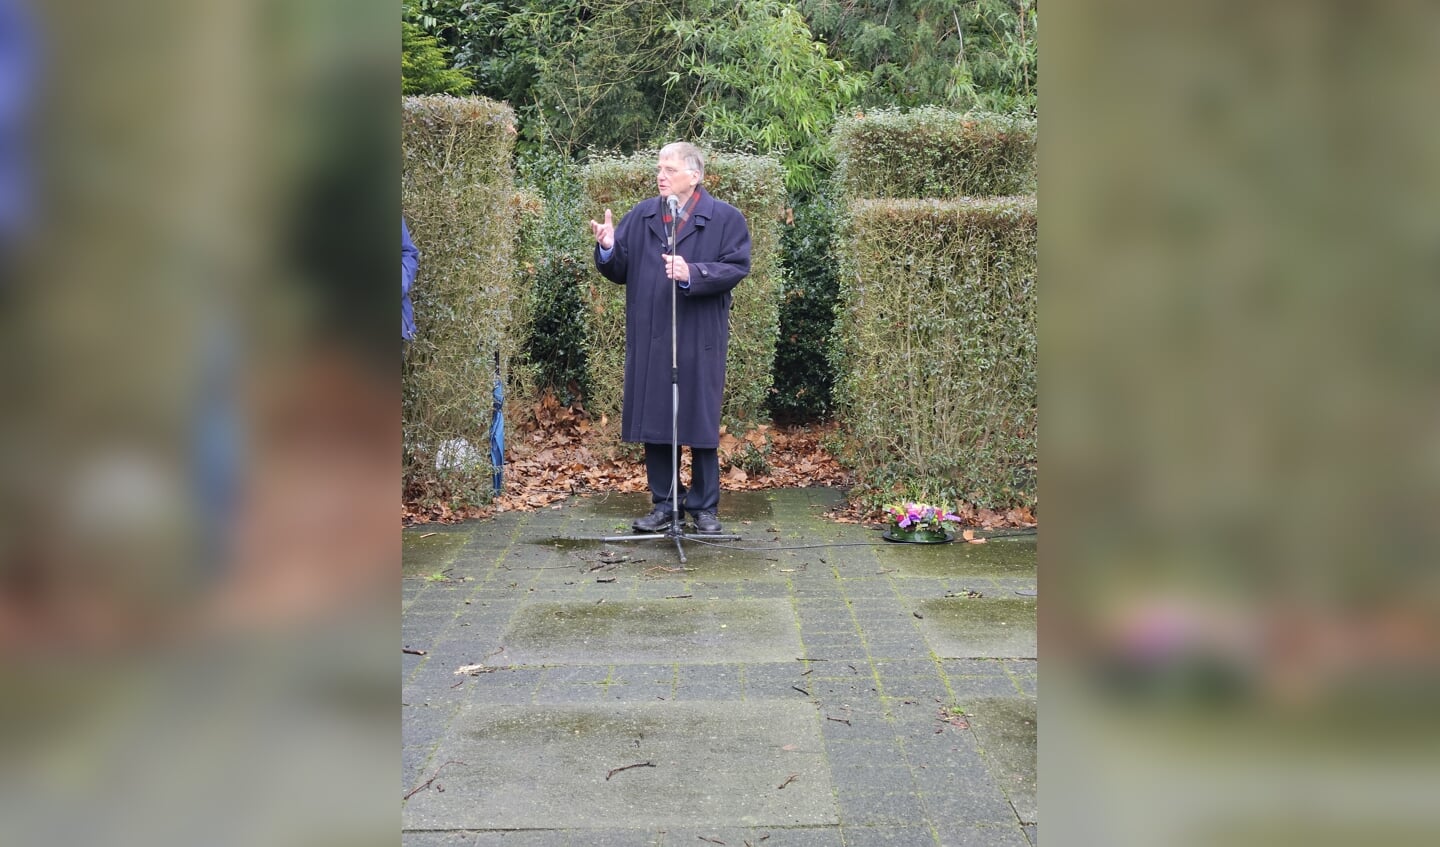 Frits van Lochem van de oudheidkunde vereniging opent herdenking van oorlogsslachtoffers Johan en Anton Schulte.